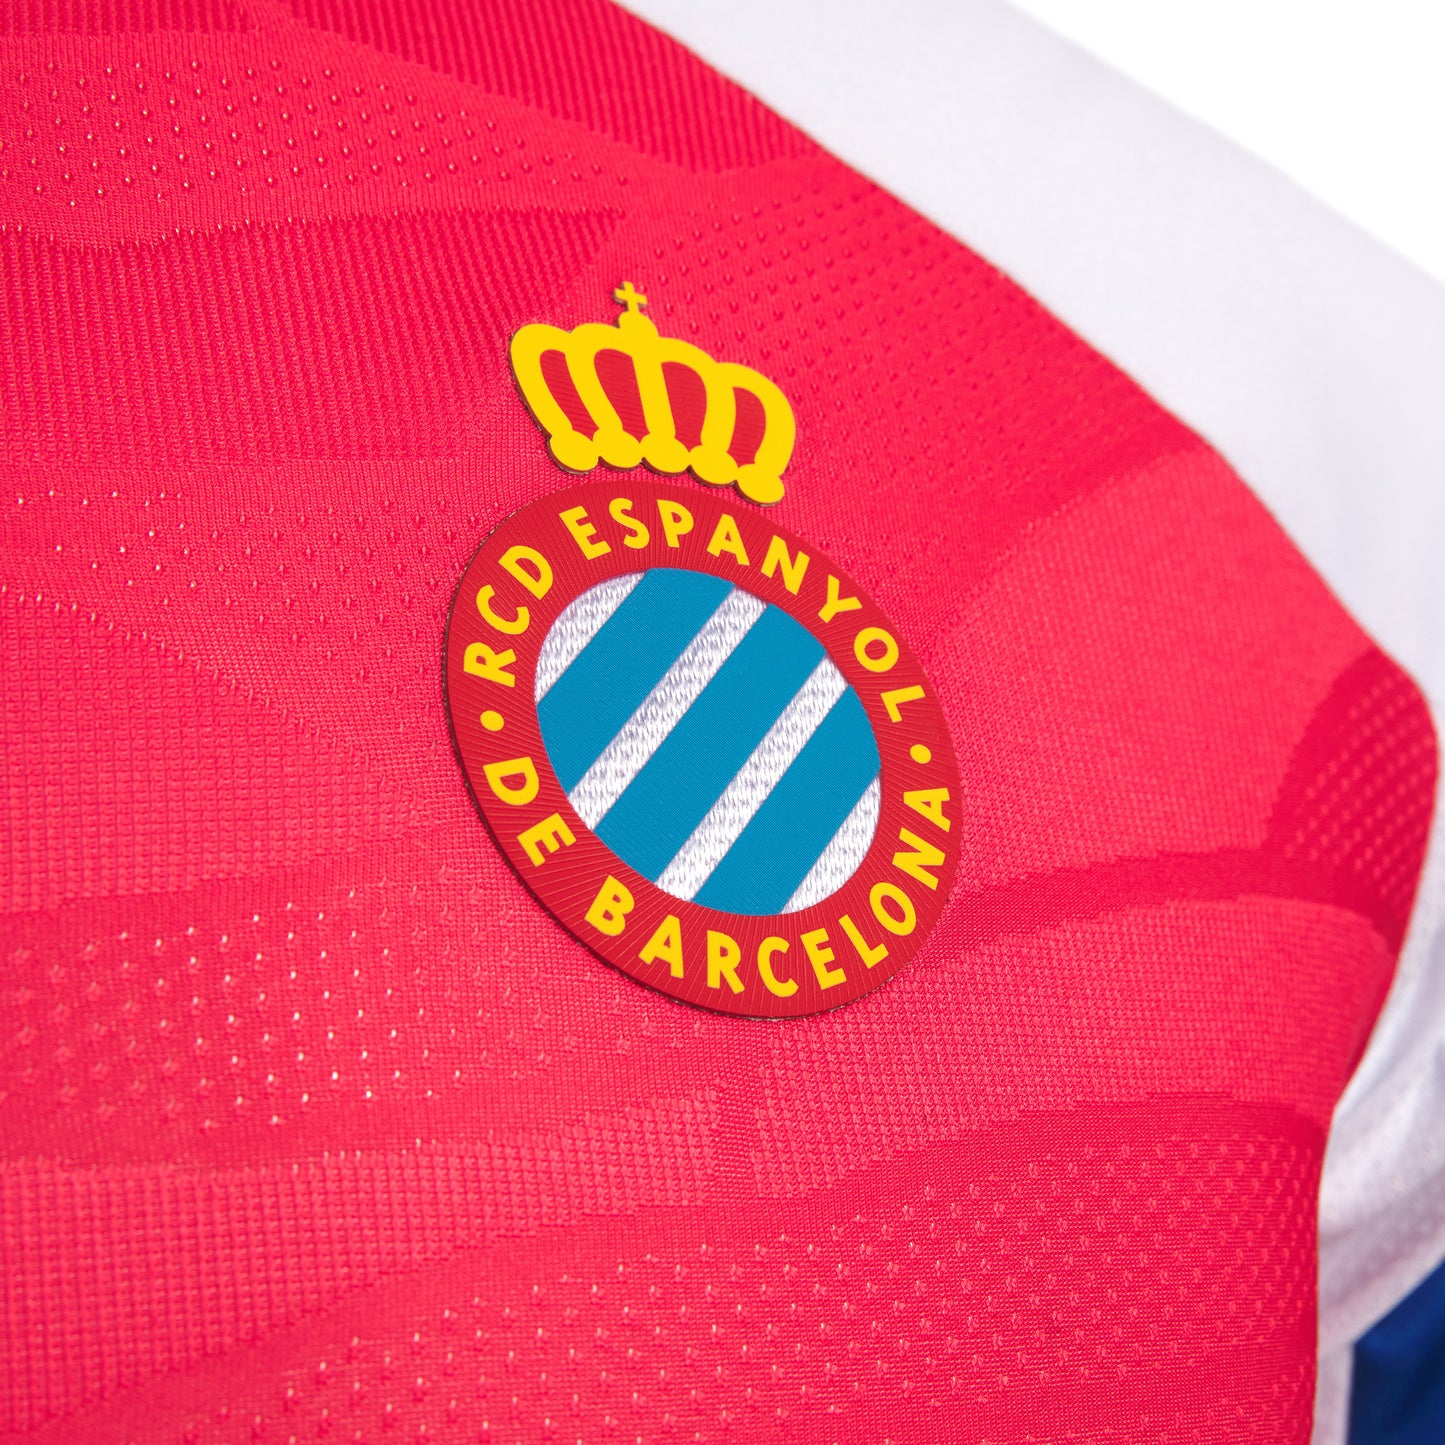 RCD Espanyol 23/24 Away jersey